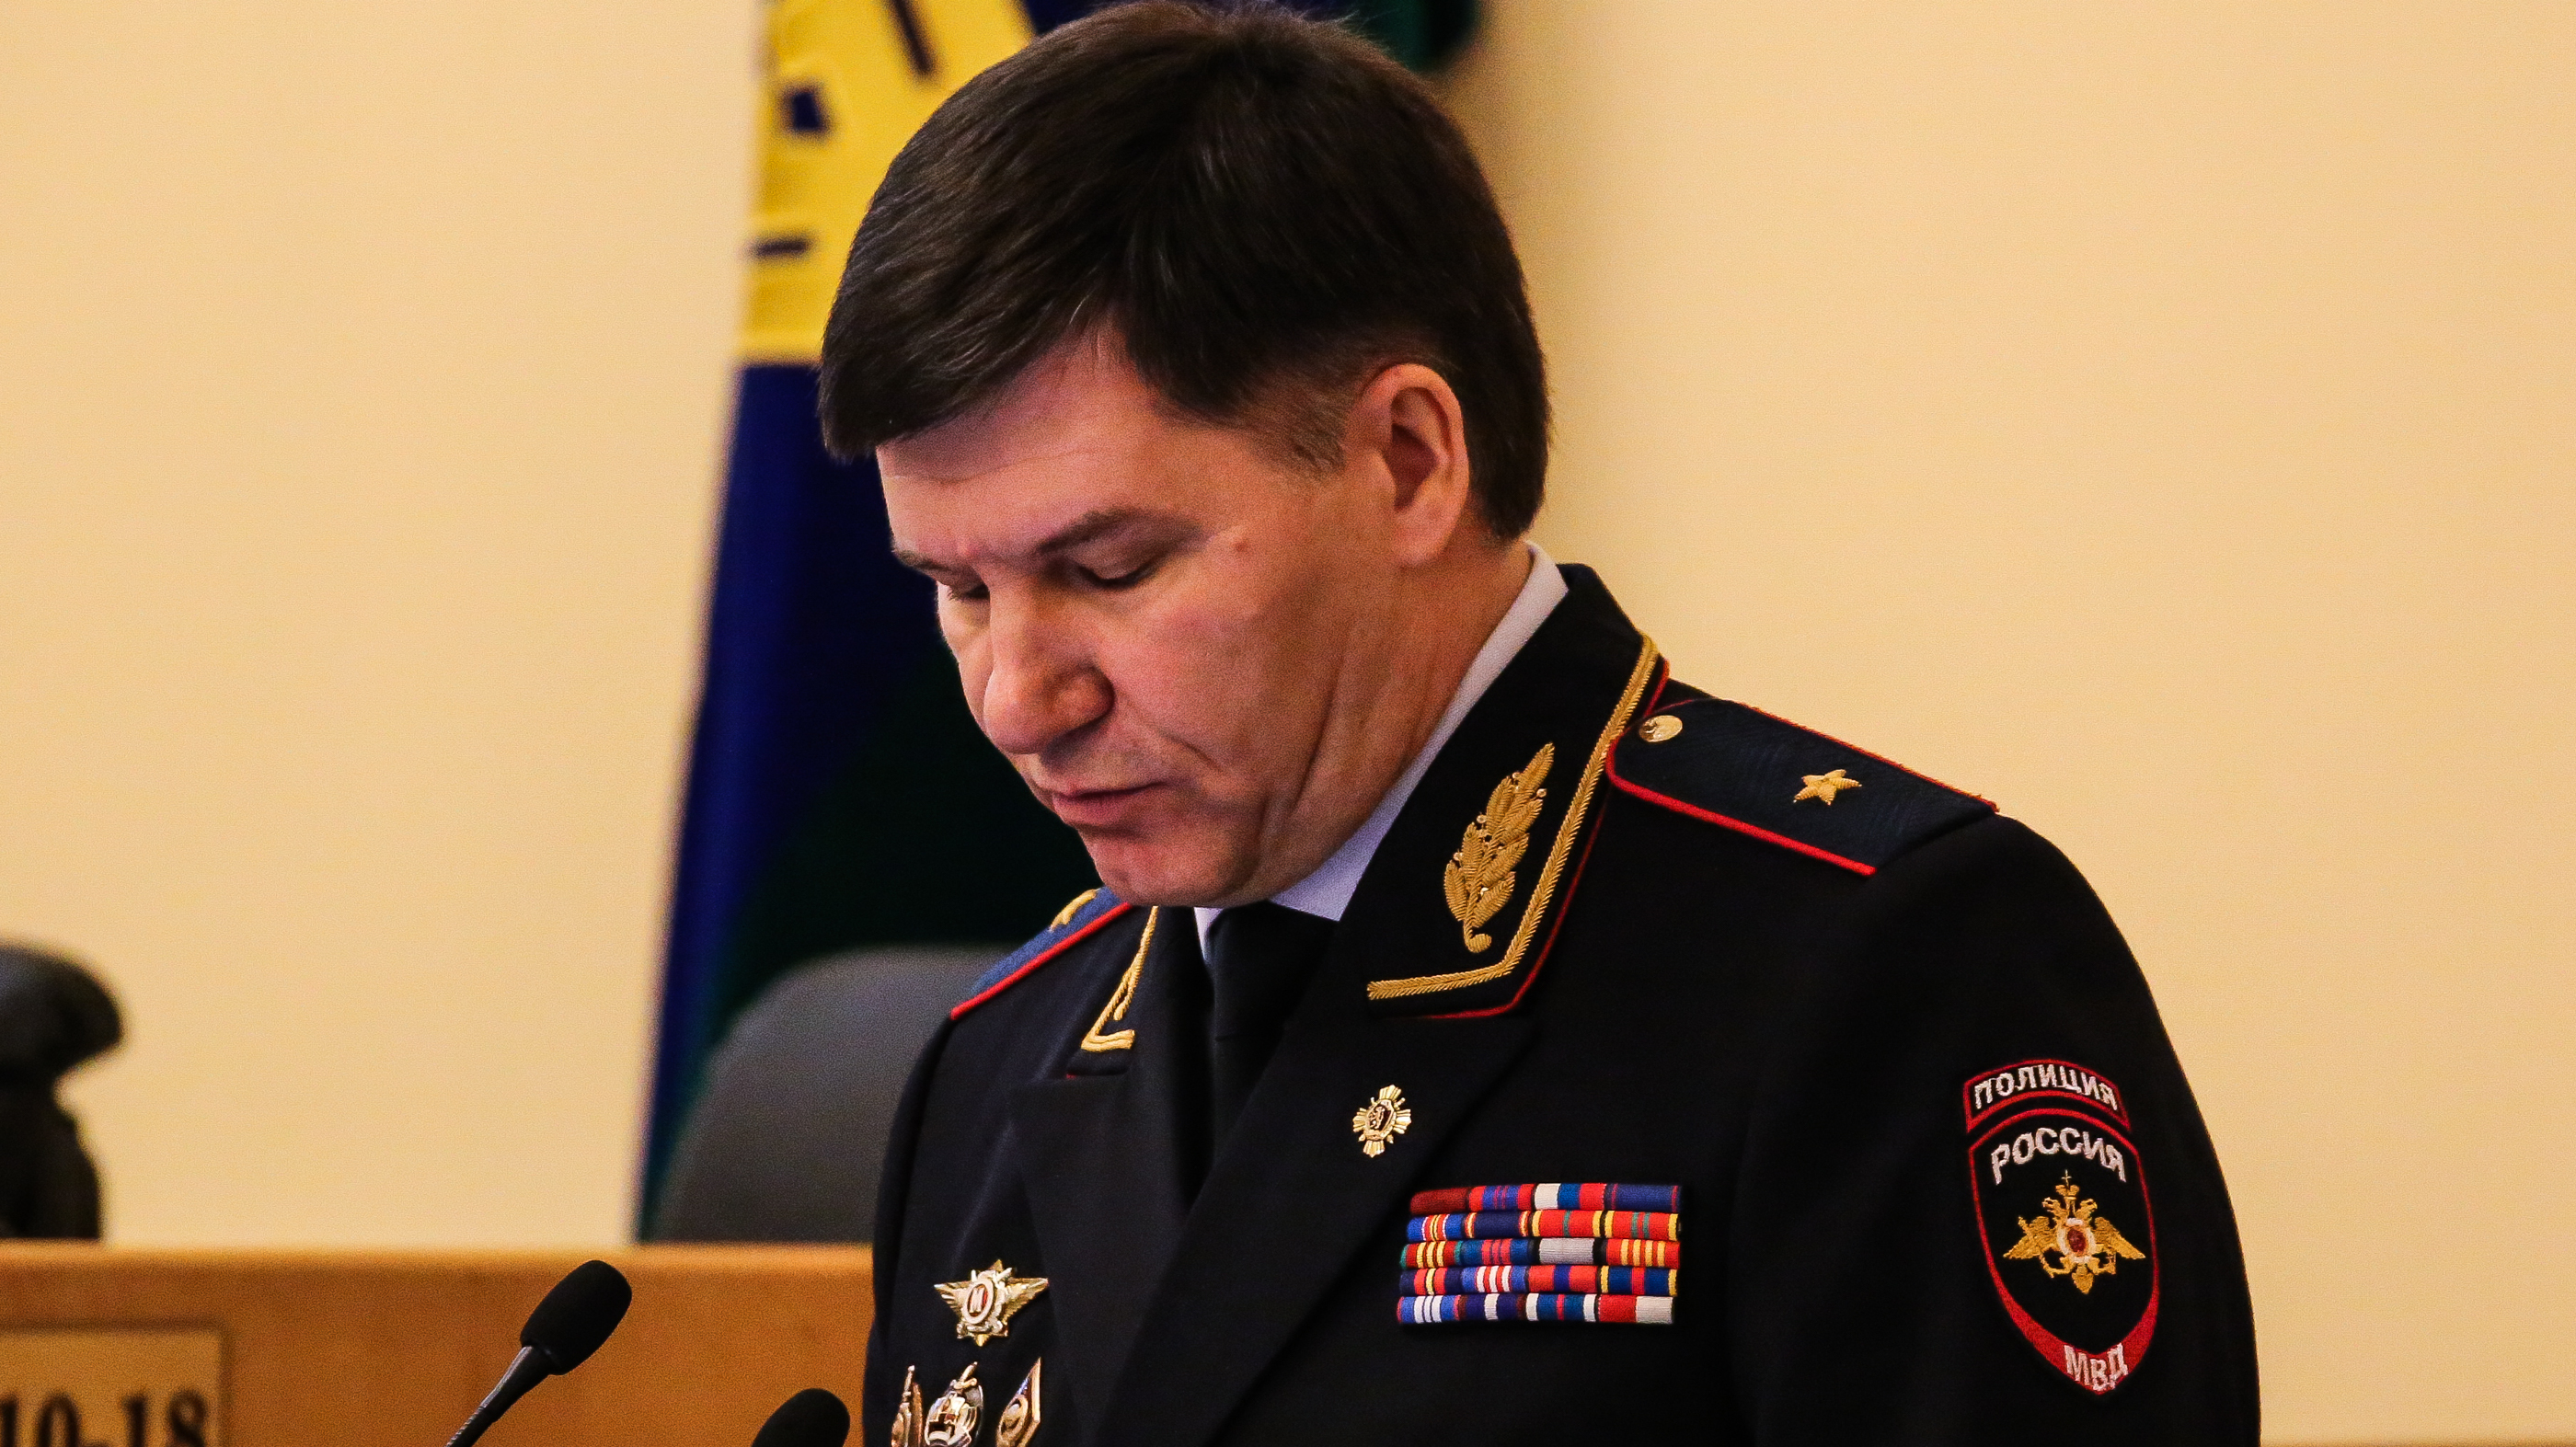 Юрий Алтынов доставлен в суд для избрания мер пресечения